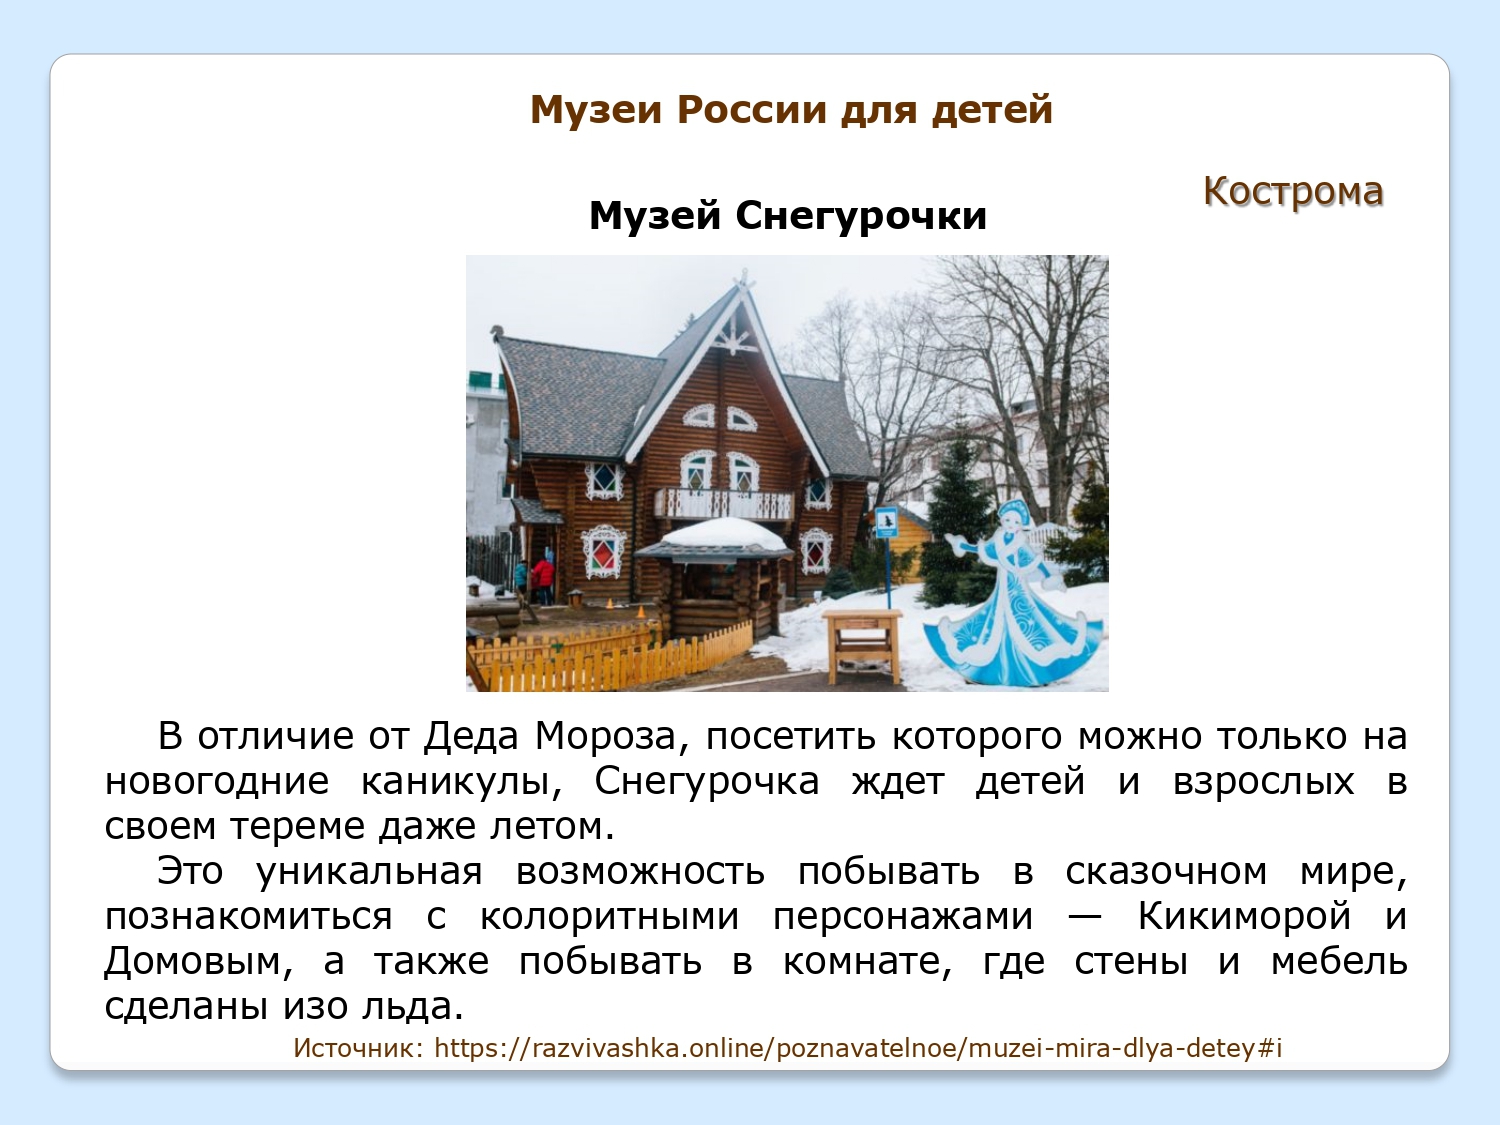 Progulka-po-interesnejshim-muzeyam-mira-Rossii-Bashkirii-i-Ufy_page-0012